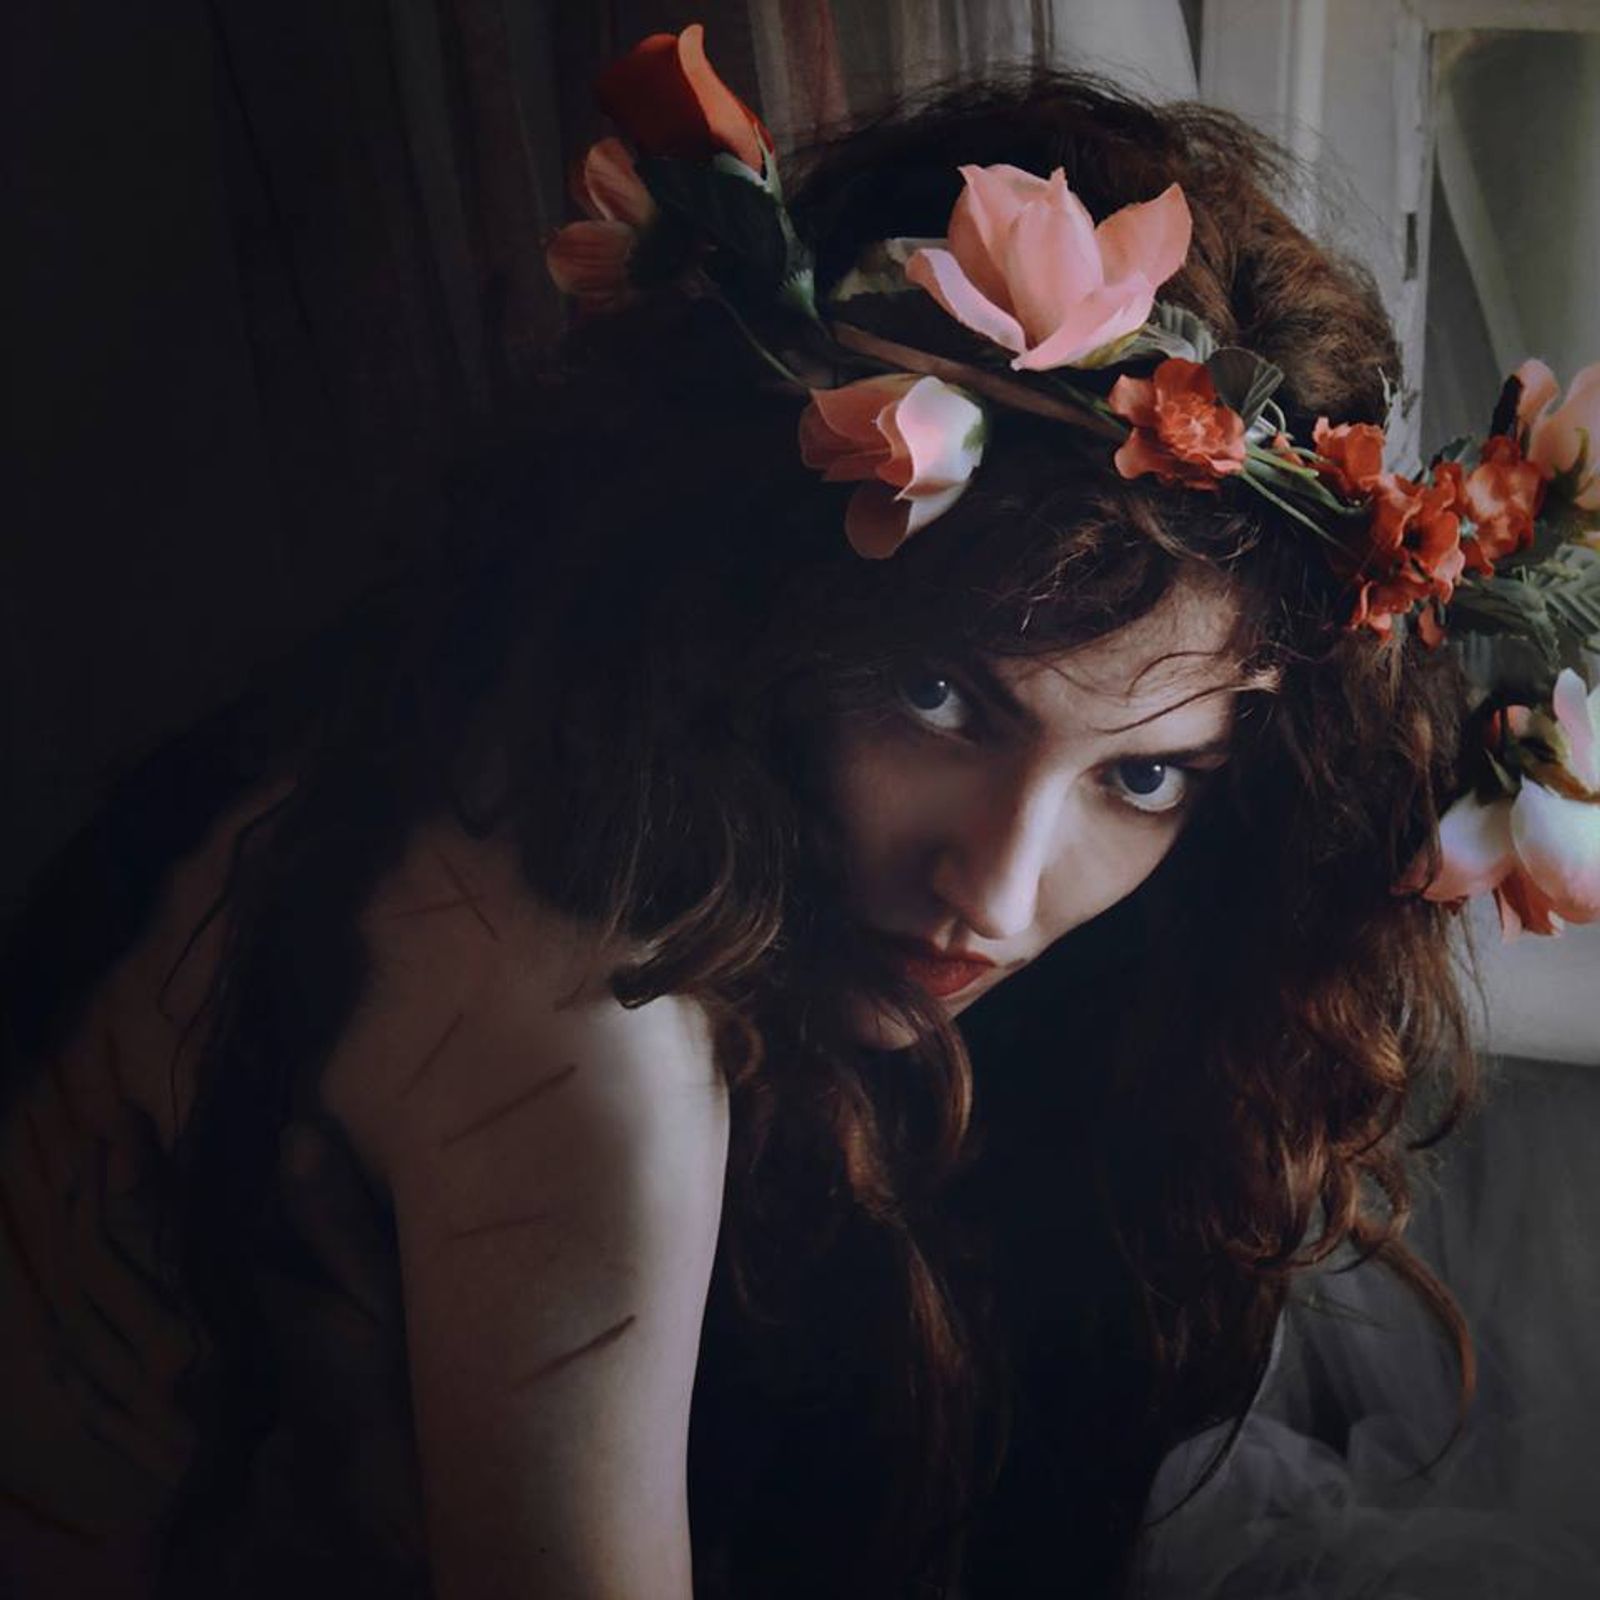 © Natalia Kovachevski - "Demonic Fairy" - Photographer and Model : Natalia Kovachevski